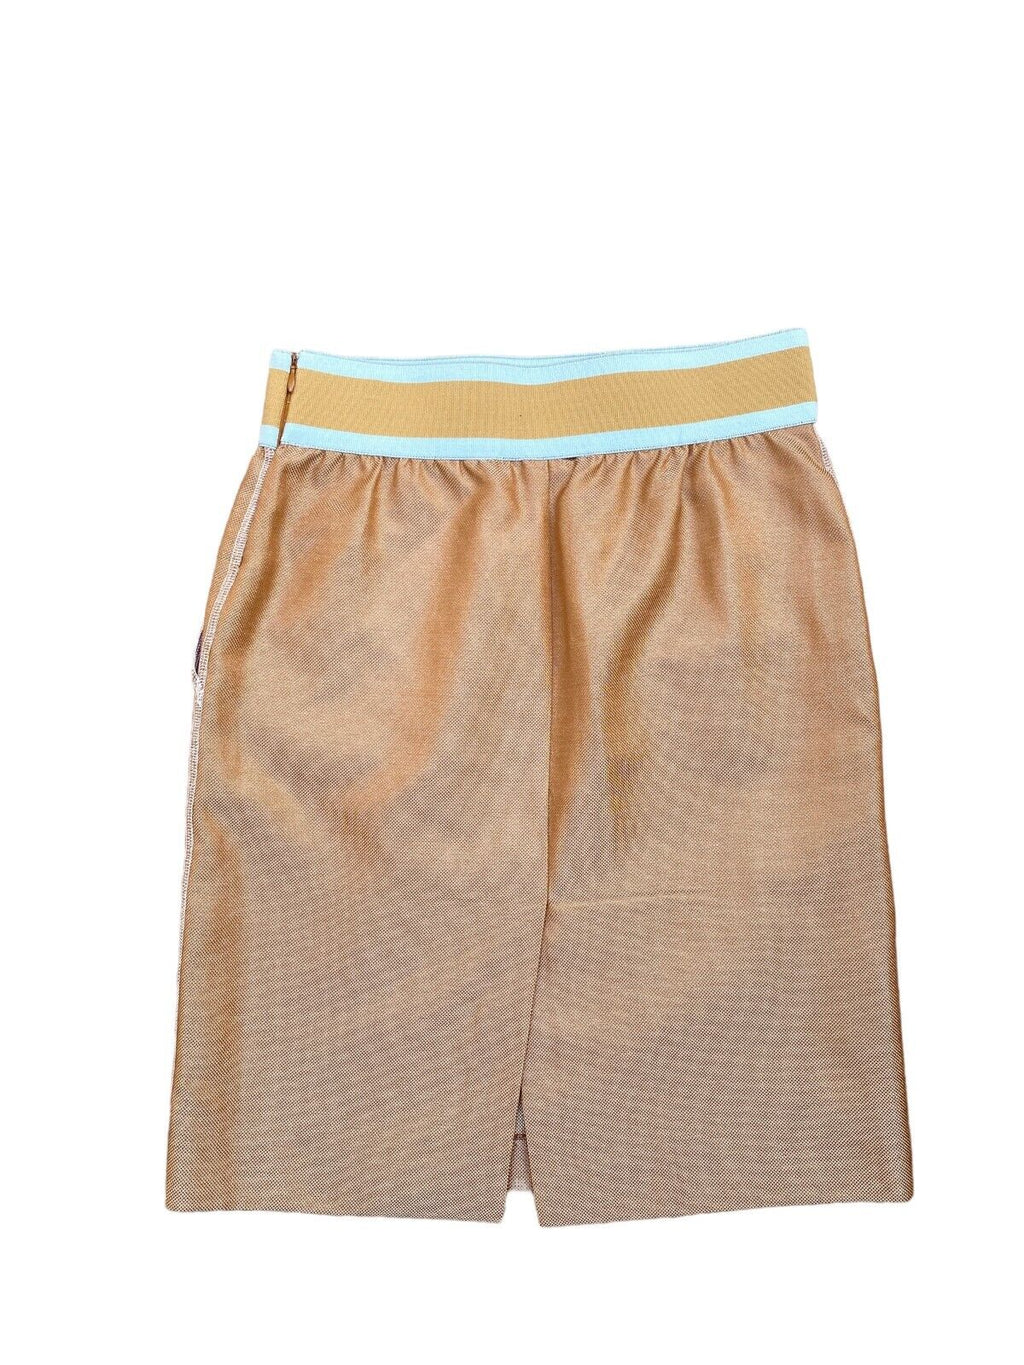 Beige / Gold Skirt Size IT 38 fits EU 34 / US 4 / XS